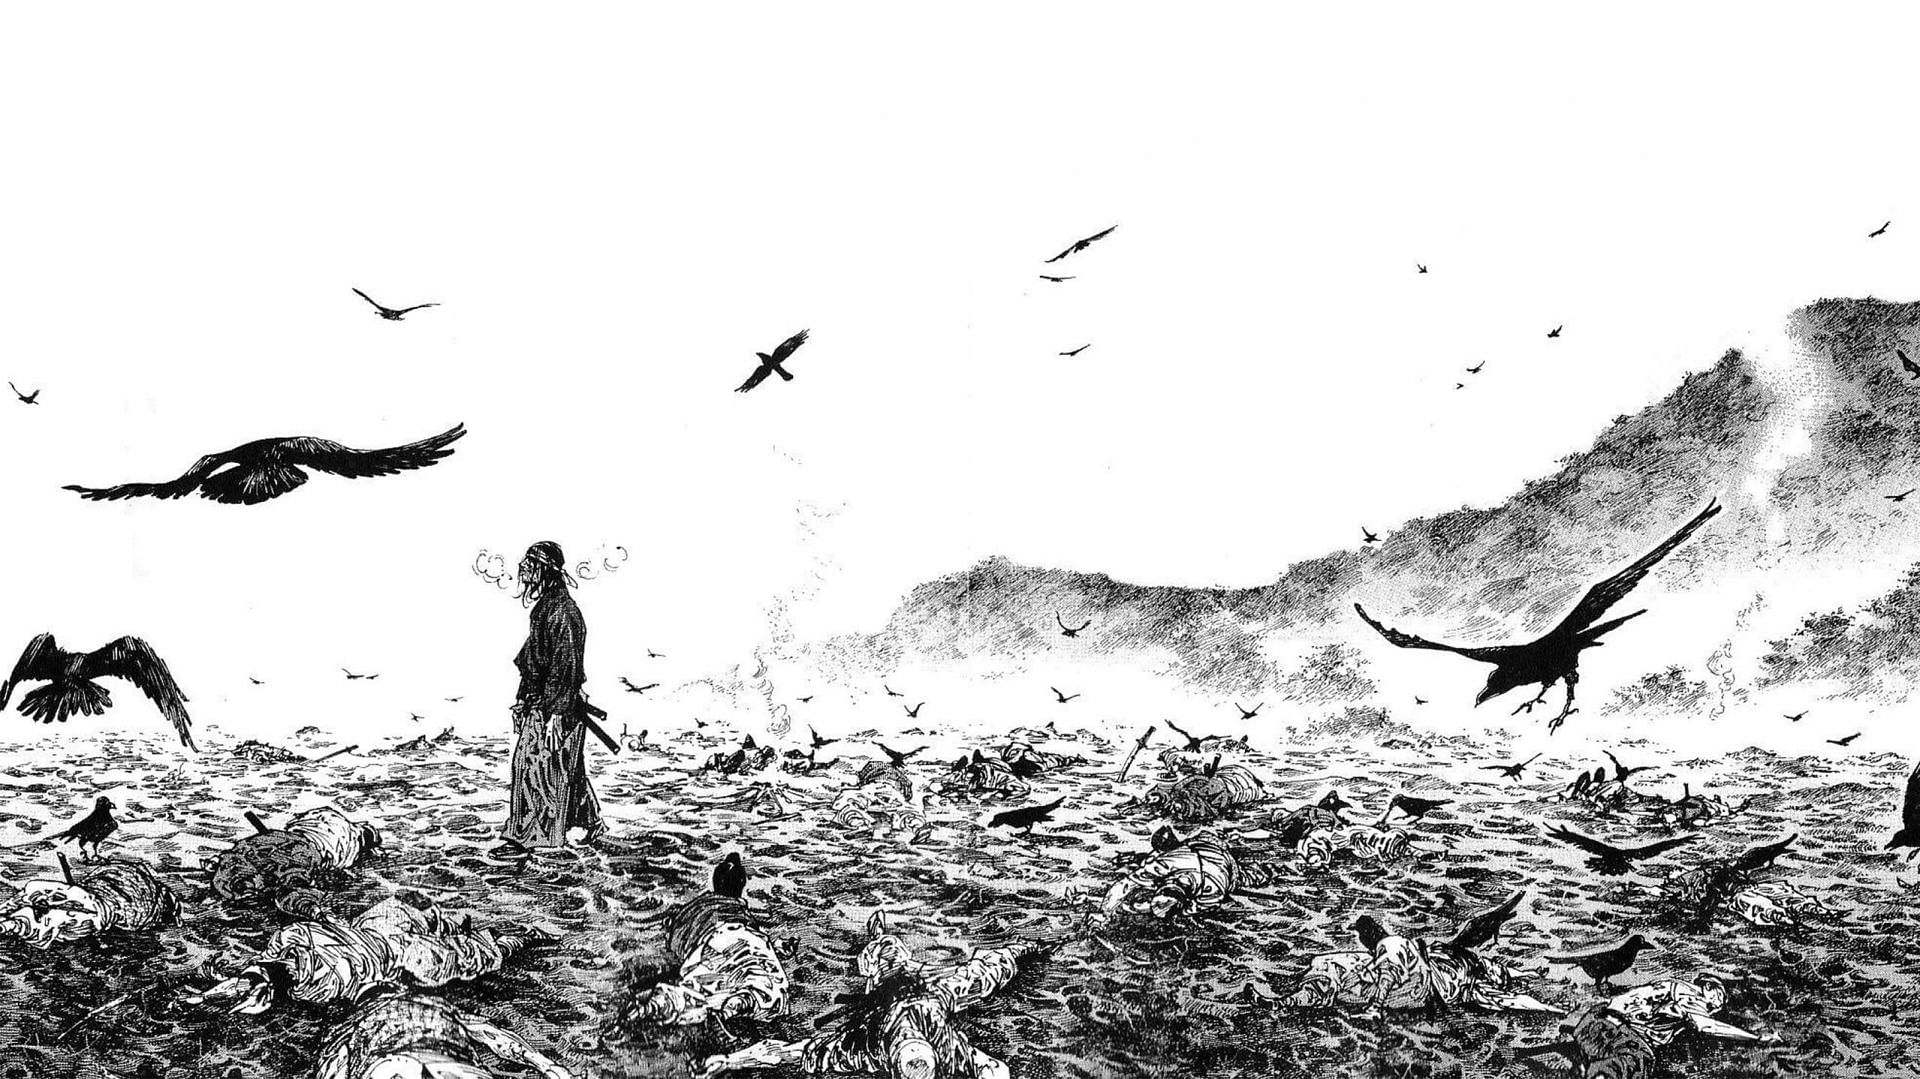 A scene from the manga (Image via Takehiko Inoue)